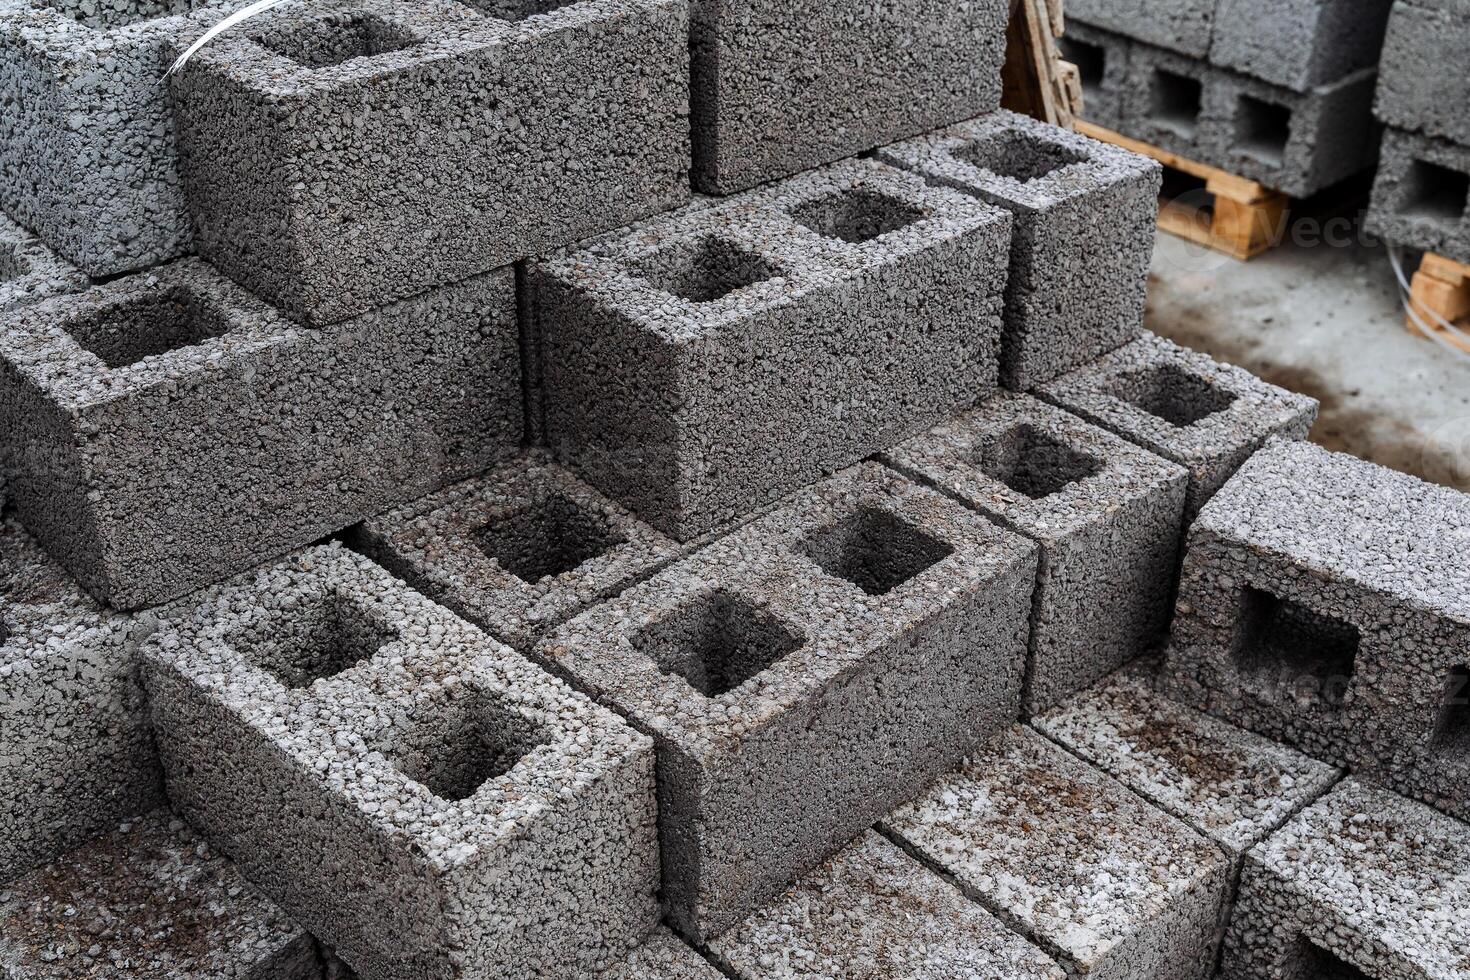 cendre blocs de gris béton sont soigneusement empilés dans une pile, mince Lignes de briques, Matériel pour bâtiment une maison photo